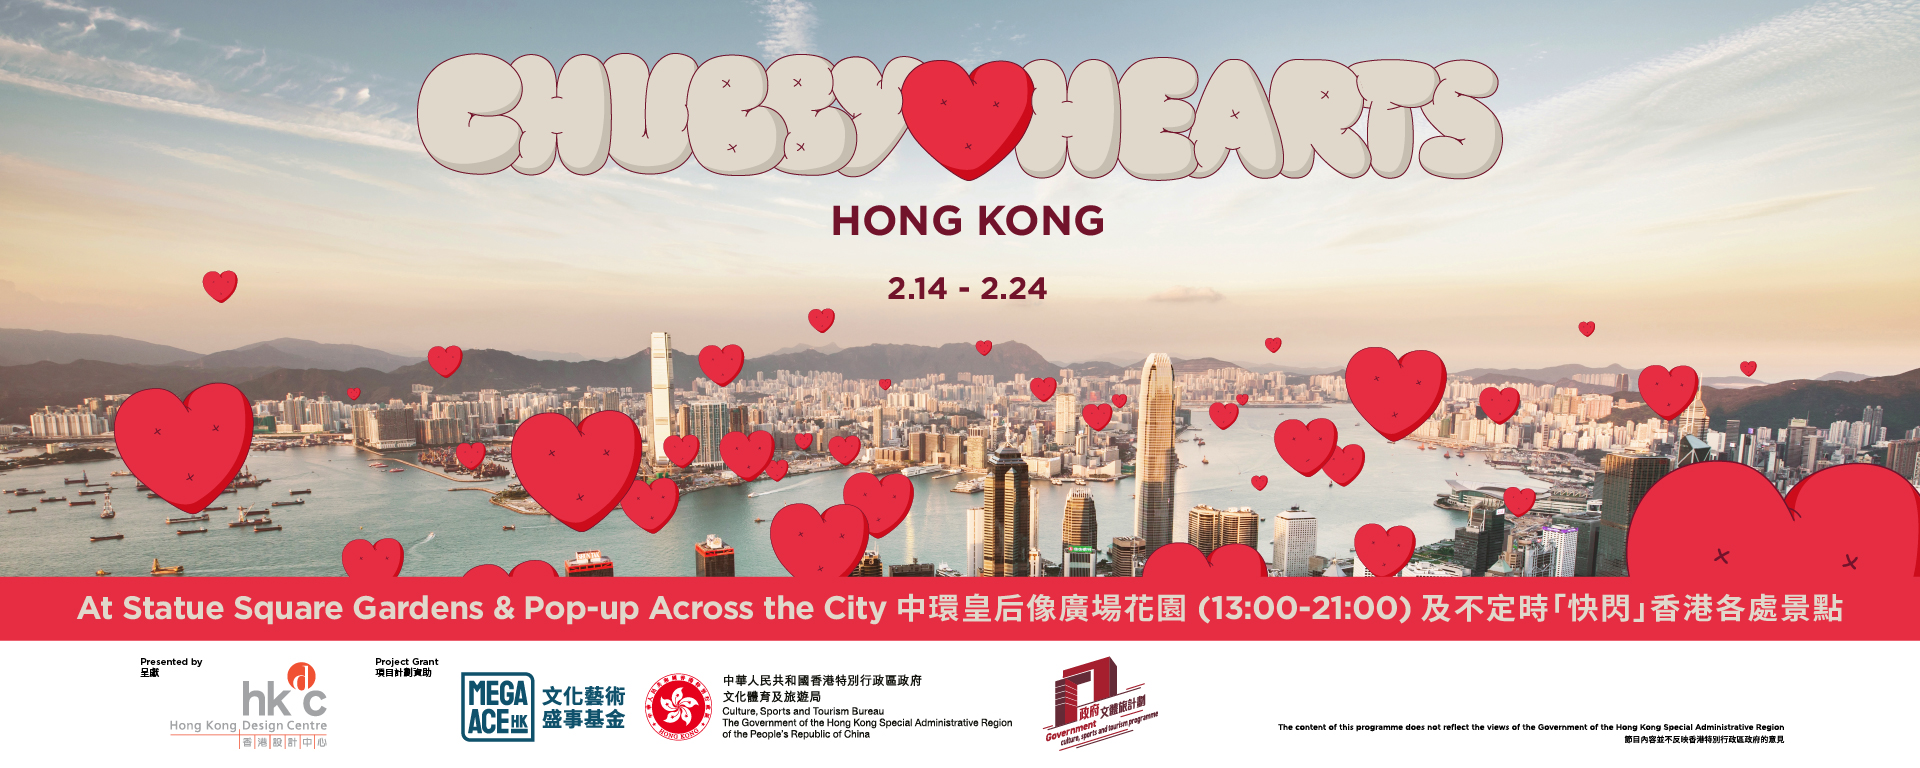 Chubby Hearts Hong Kong飘浮胖胖心快闪